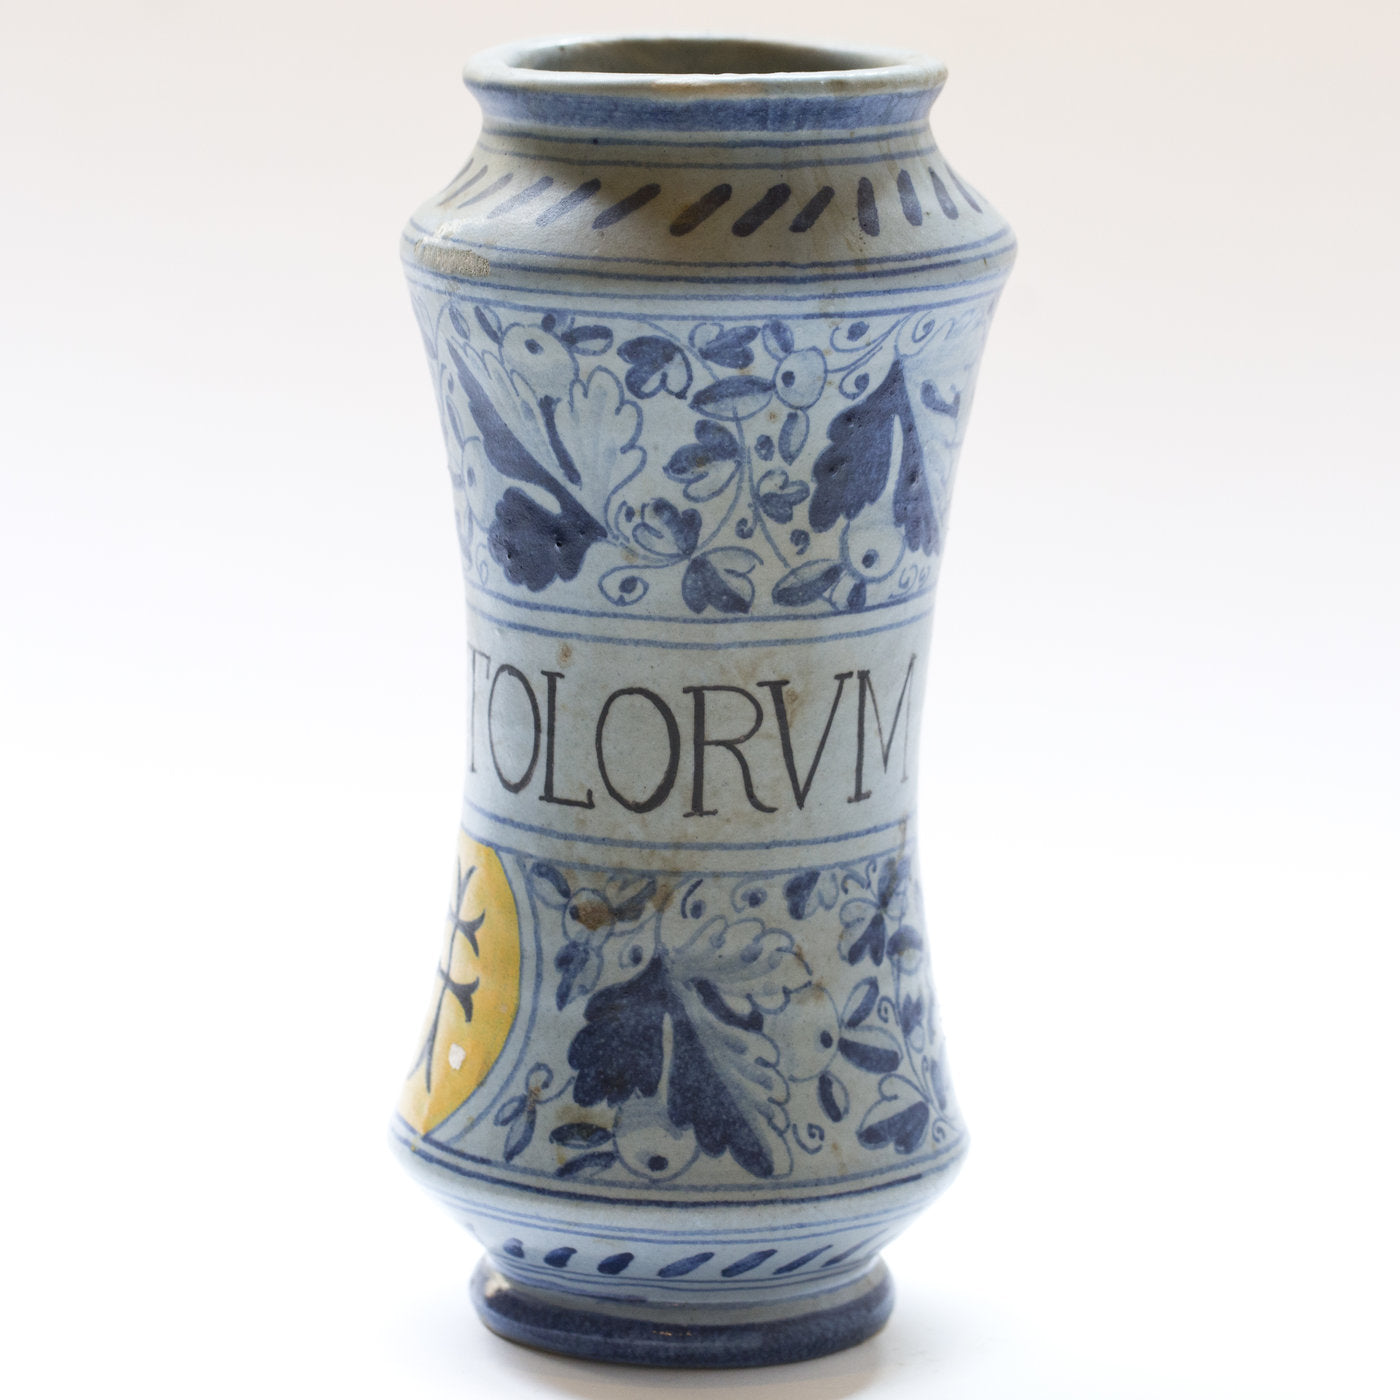 Faentino Ceramic Vase - Alternative view 1